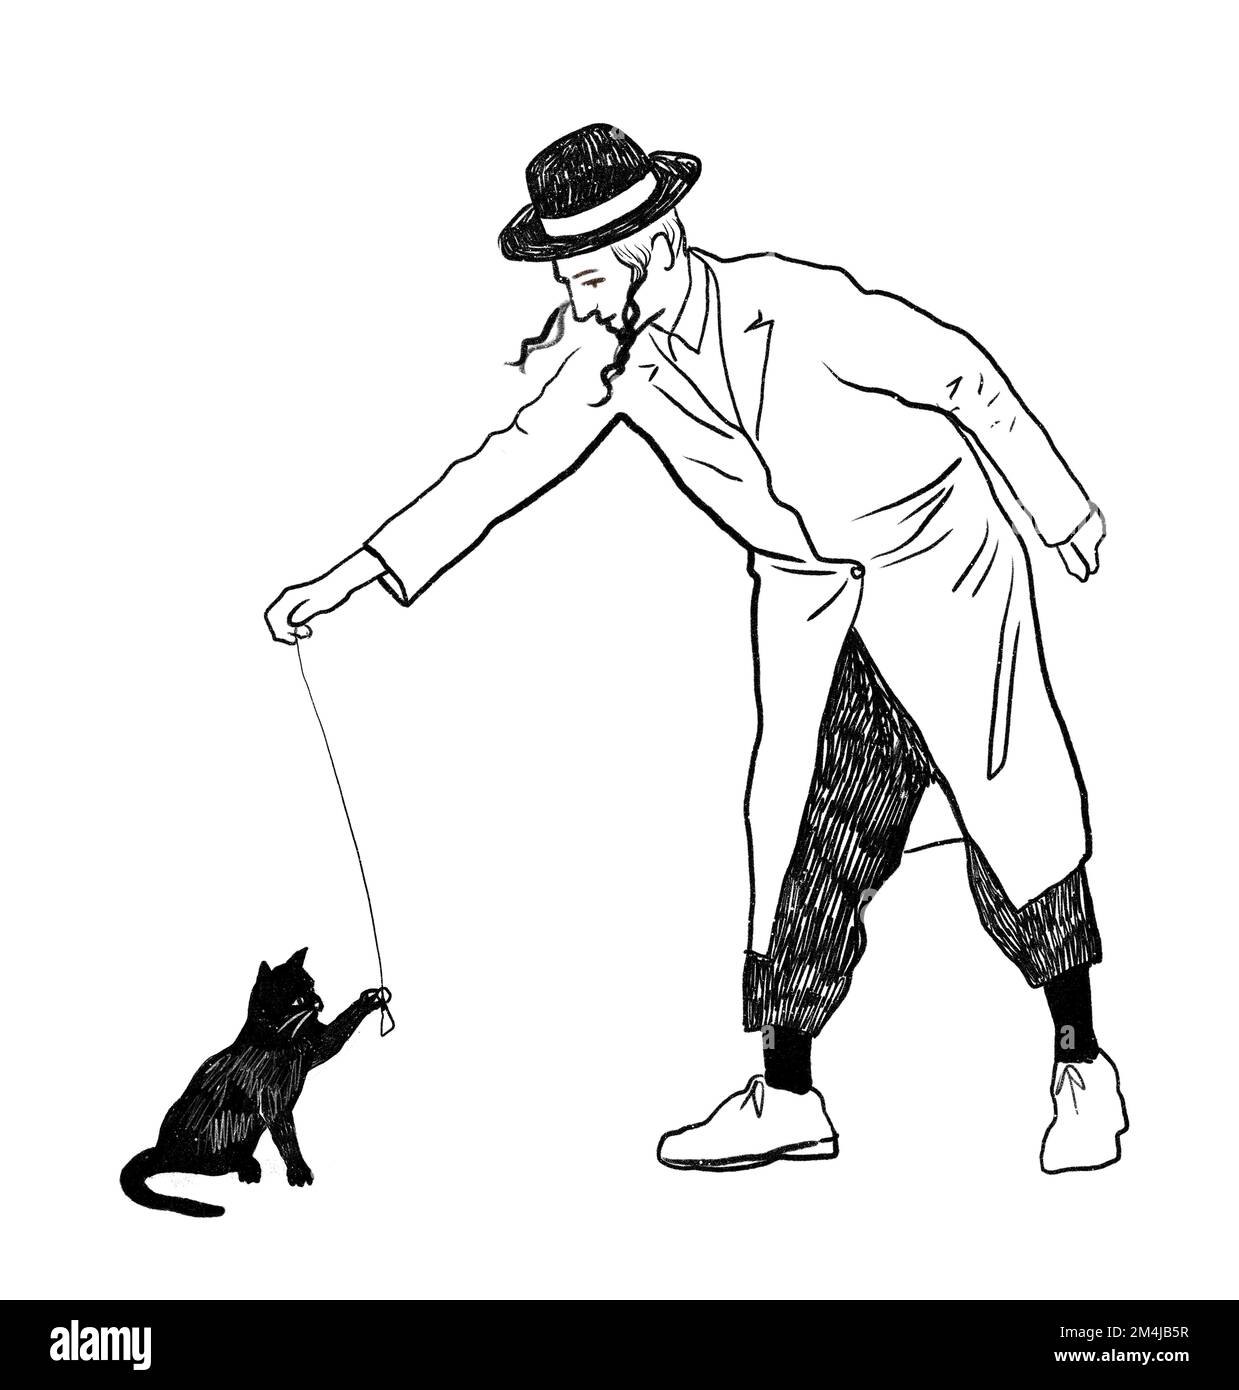 Orthodoxer jüdischer junger Mann mit hüpfenden Seitenschürzen, Hut und langem Mantel, der mit schwarzer, sitzender Katze spielt, mit schwarzer und weißer Tintenzeichnung. Stockfoto